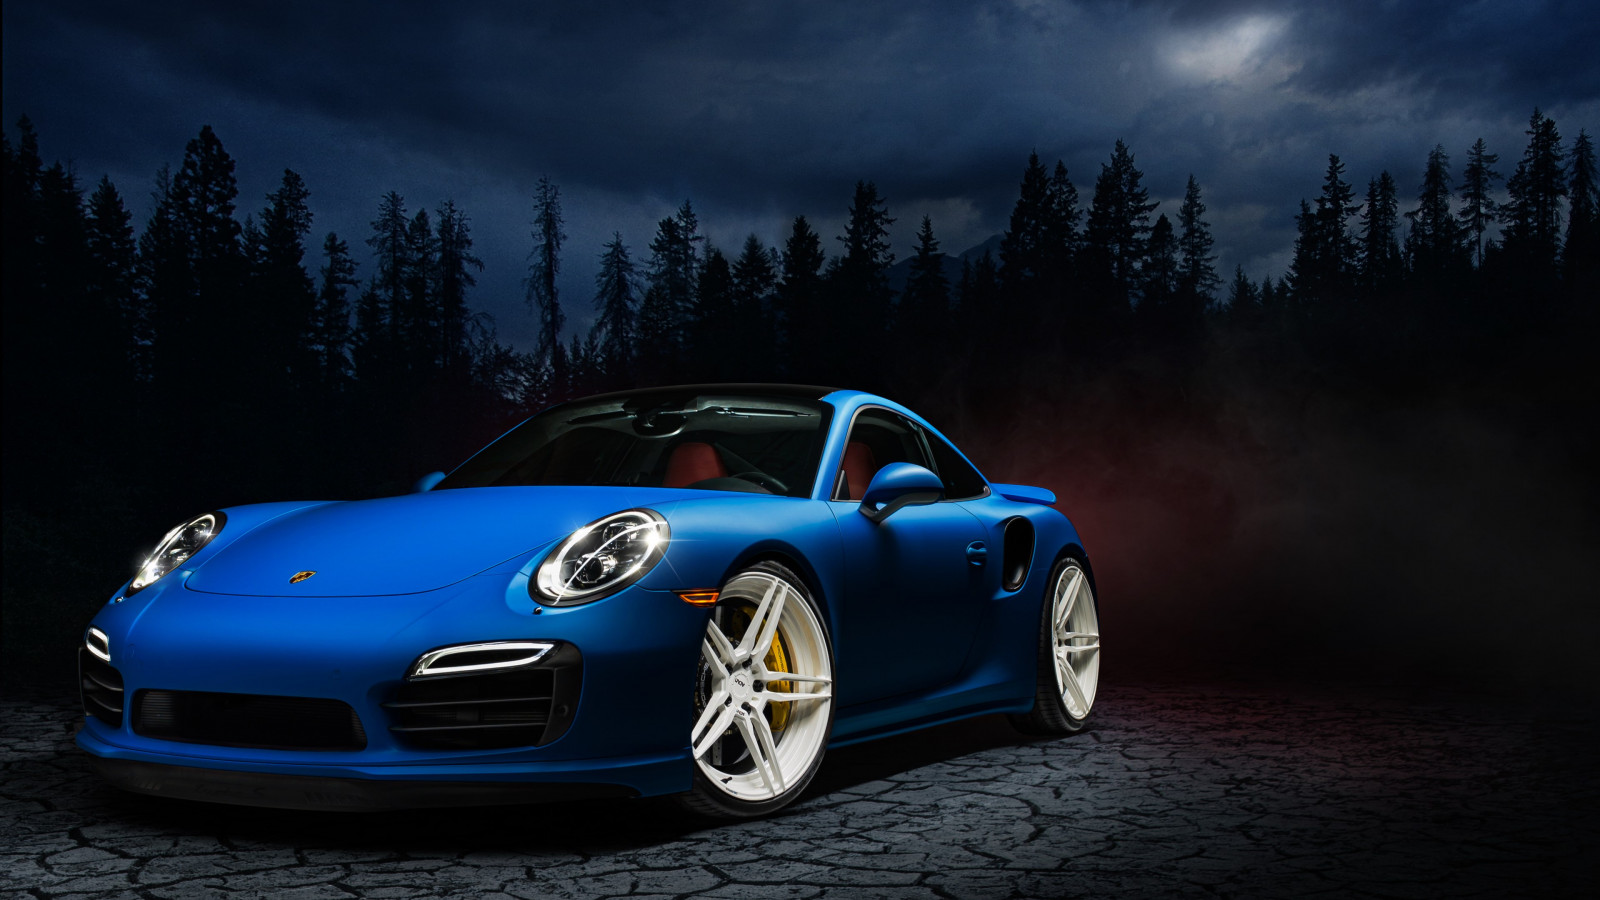 Porsche 911 blue wallpaper 1600x900